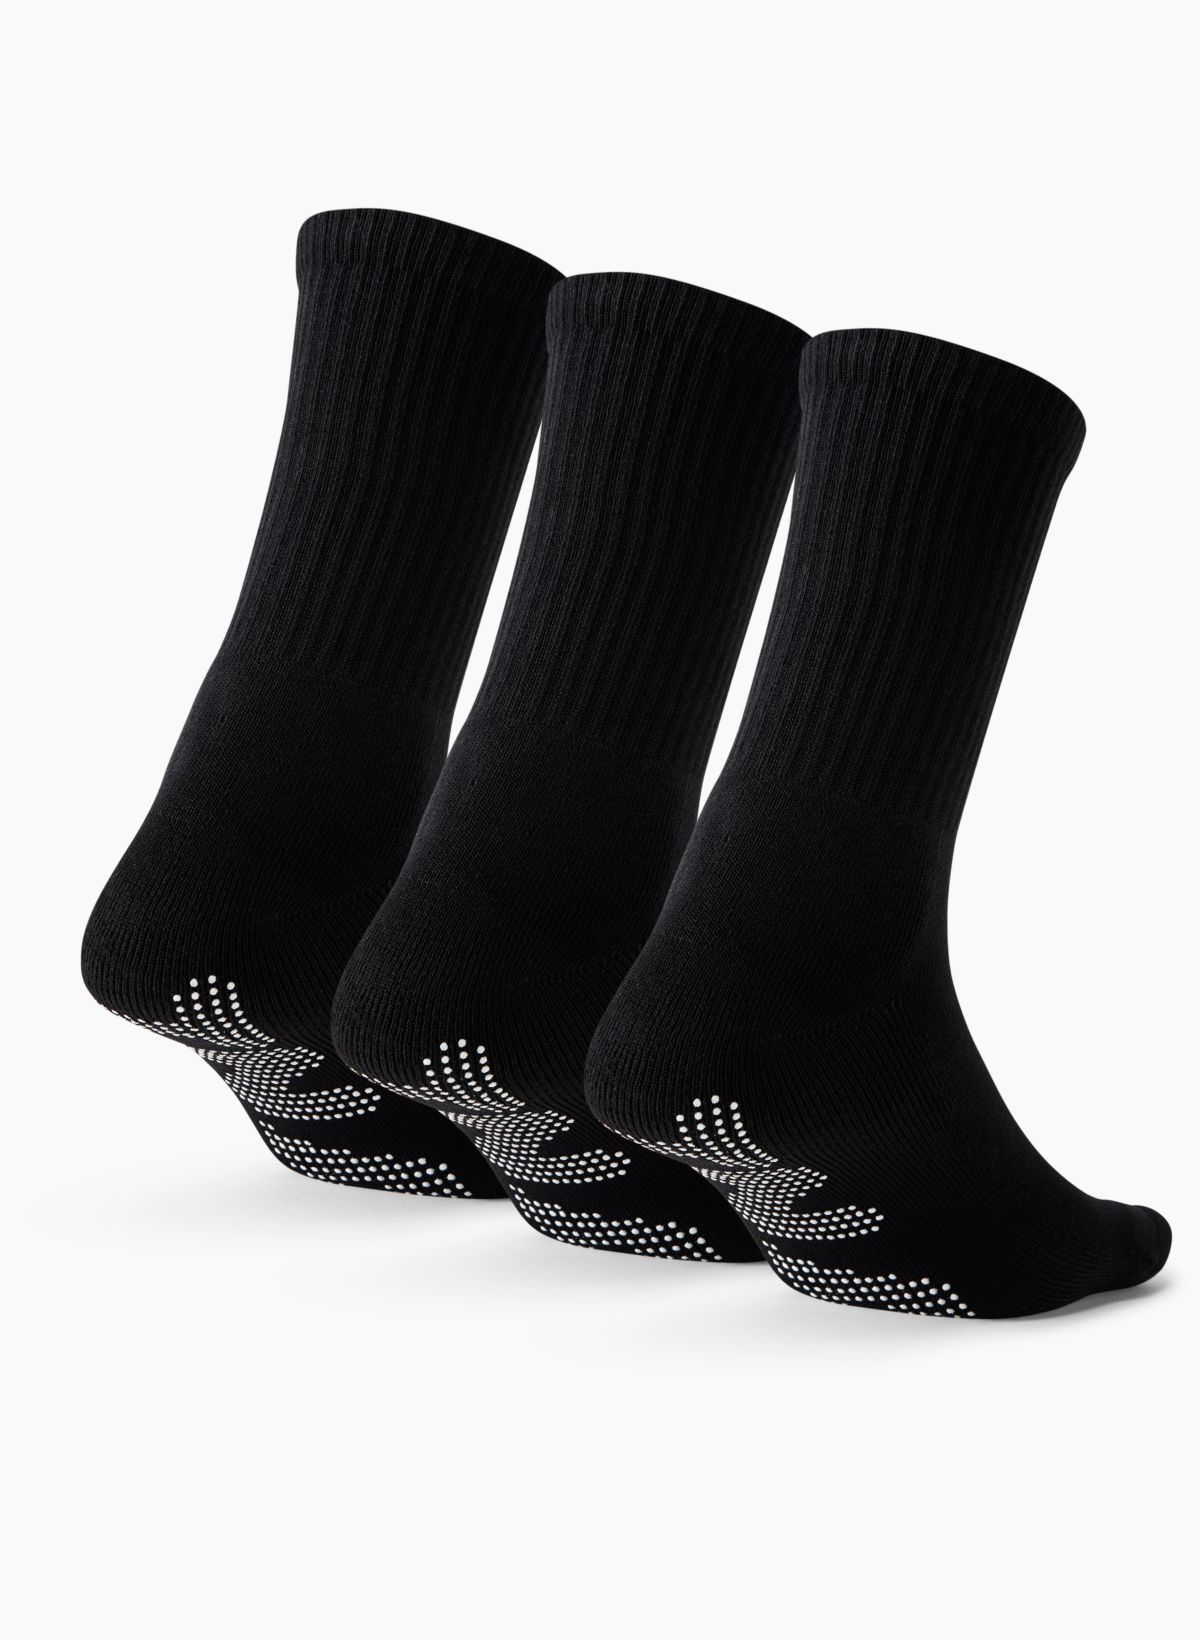 Polar Feet Nonslip Fleece Socks for Men and Women, Unisex Black S